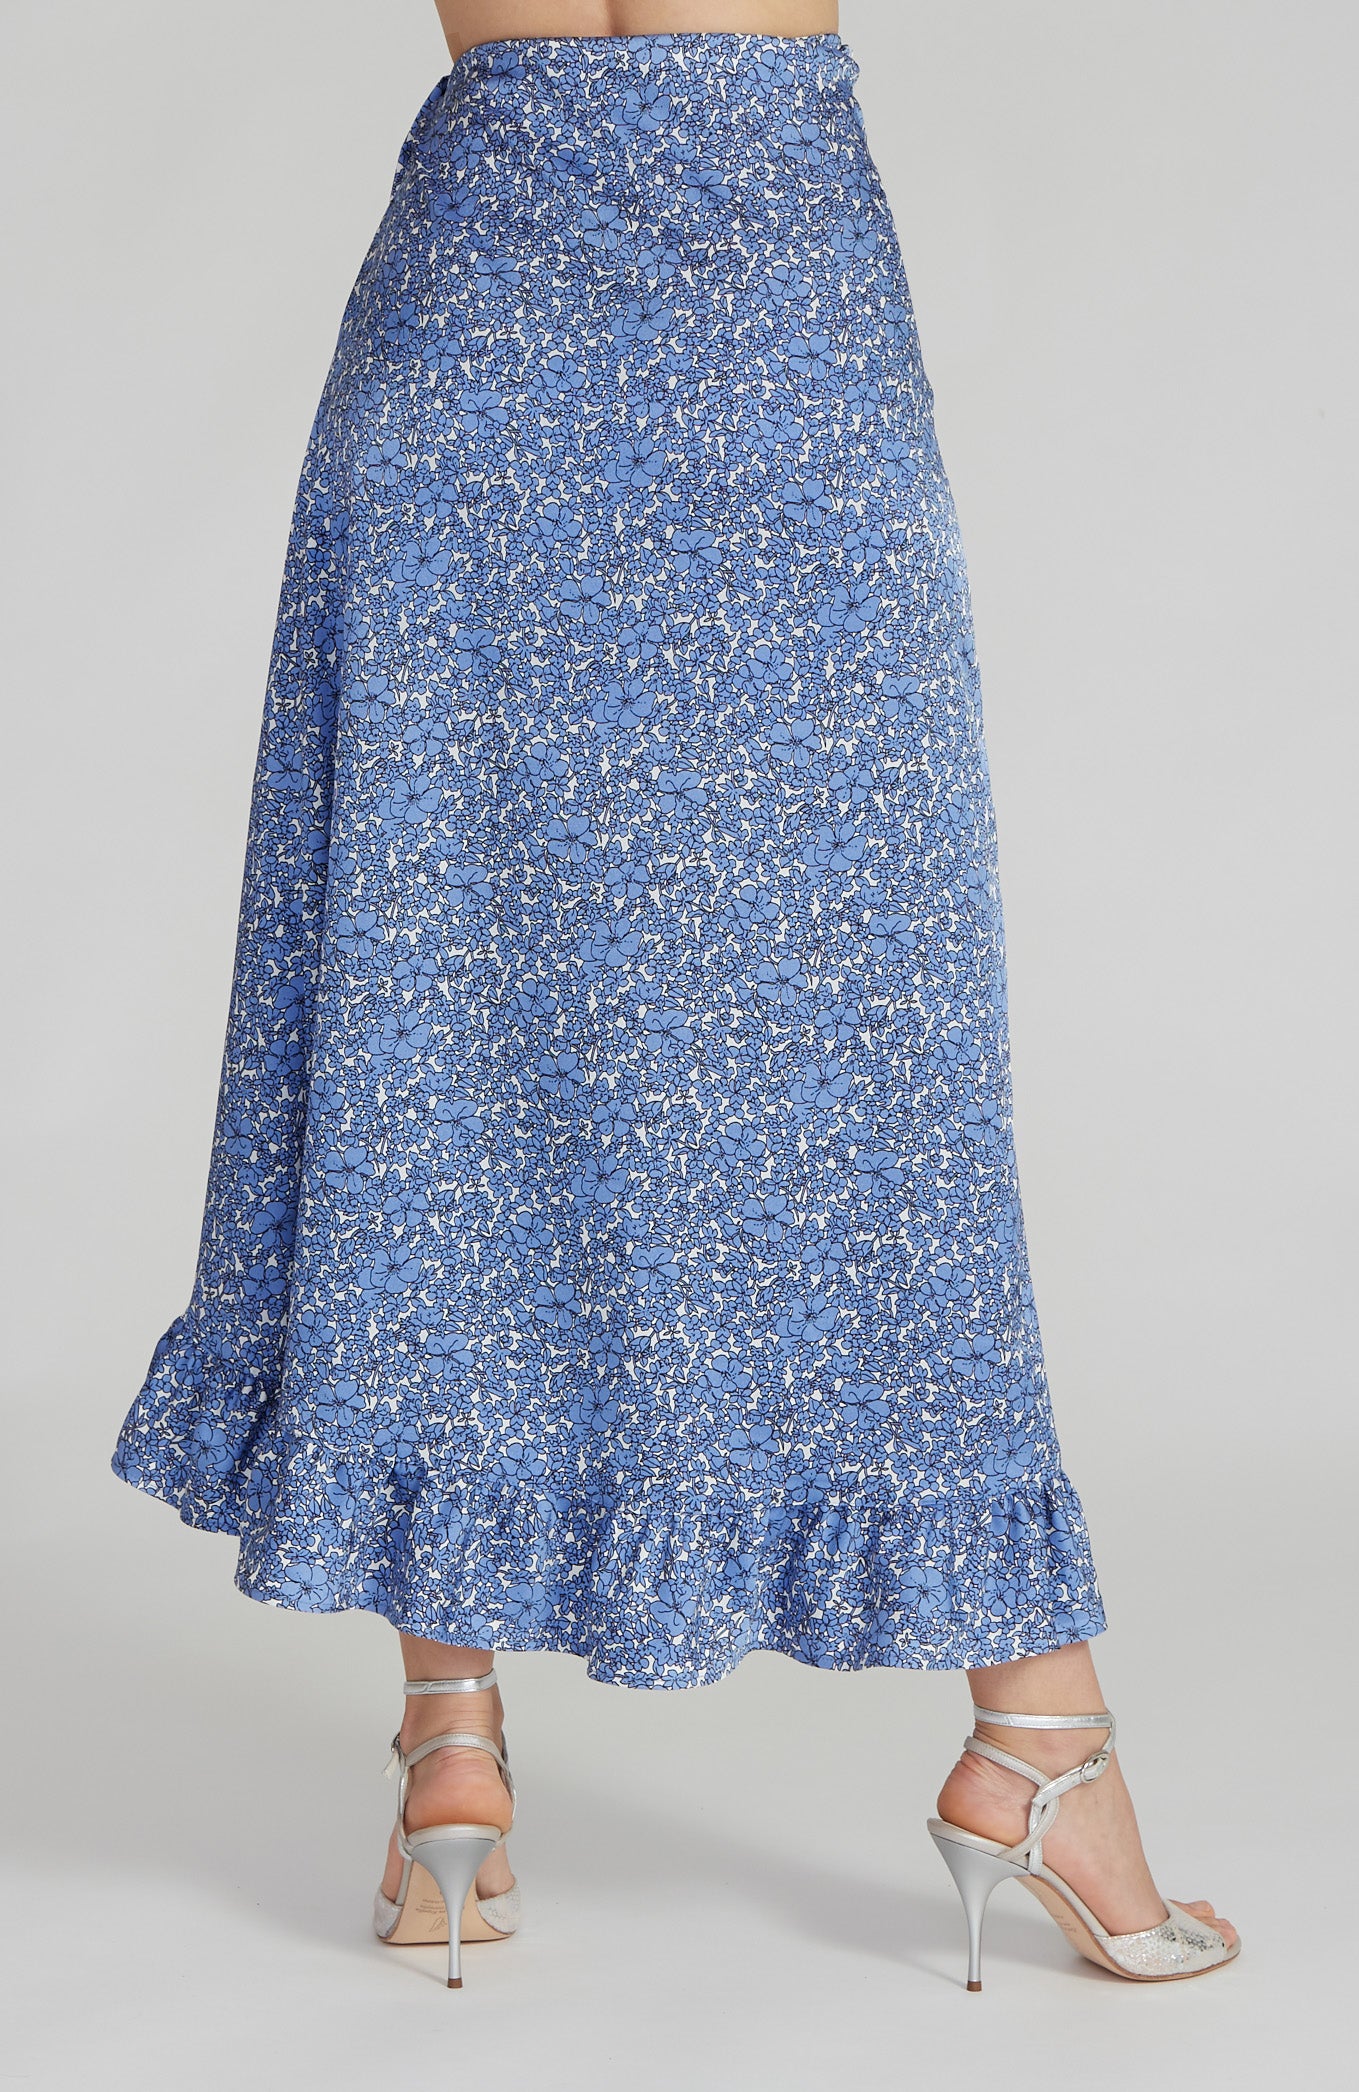 DINA - Ruffle Hem Wrap Skirt in Sky Blue Florals